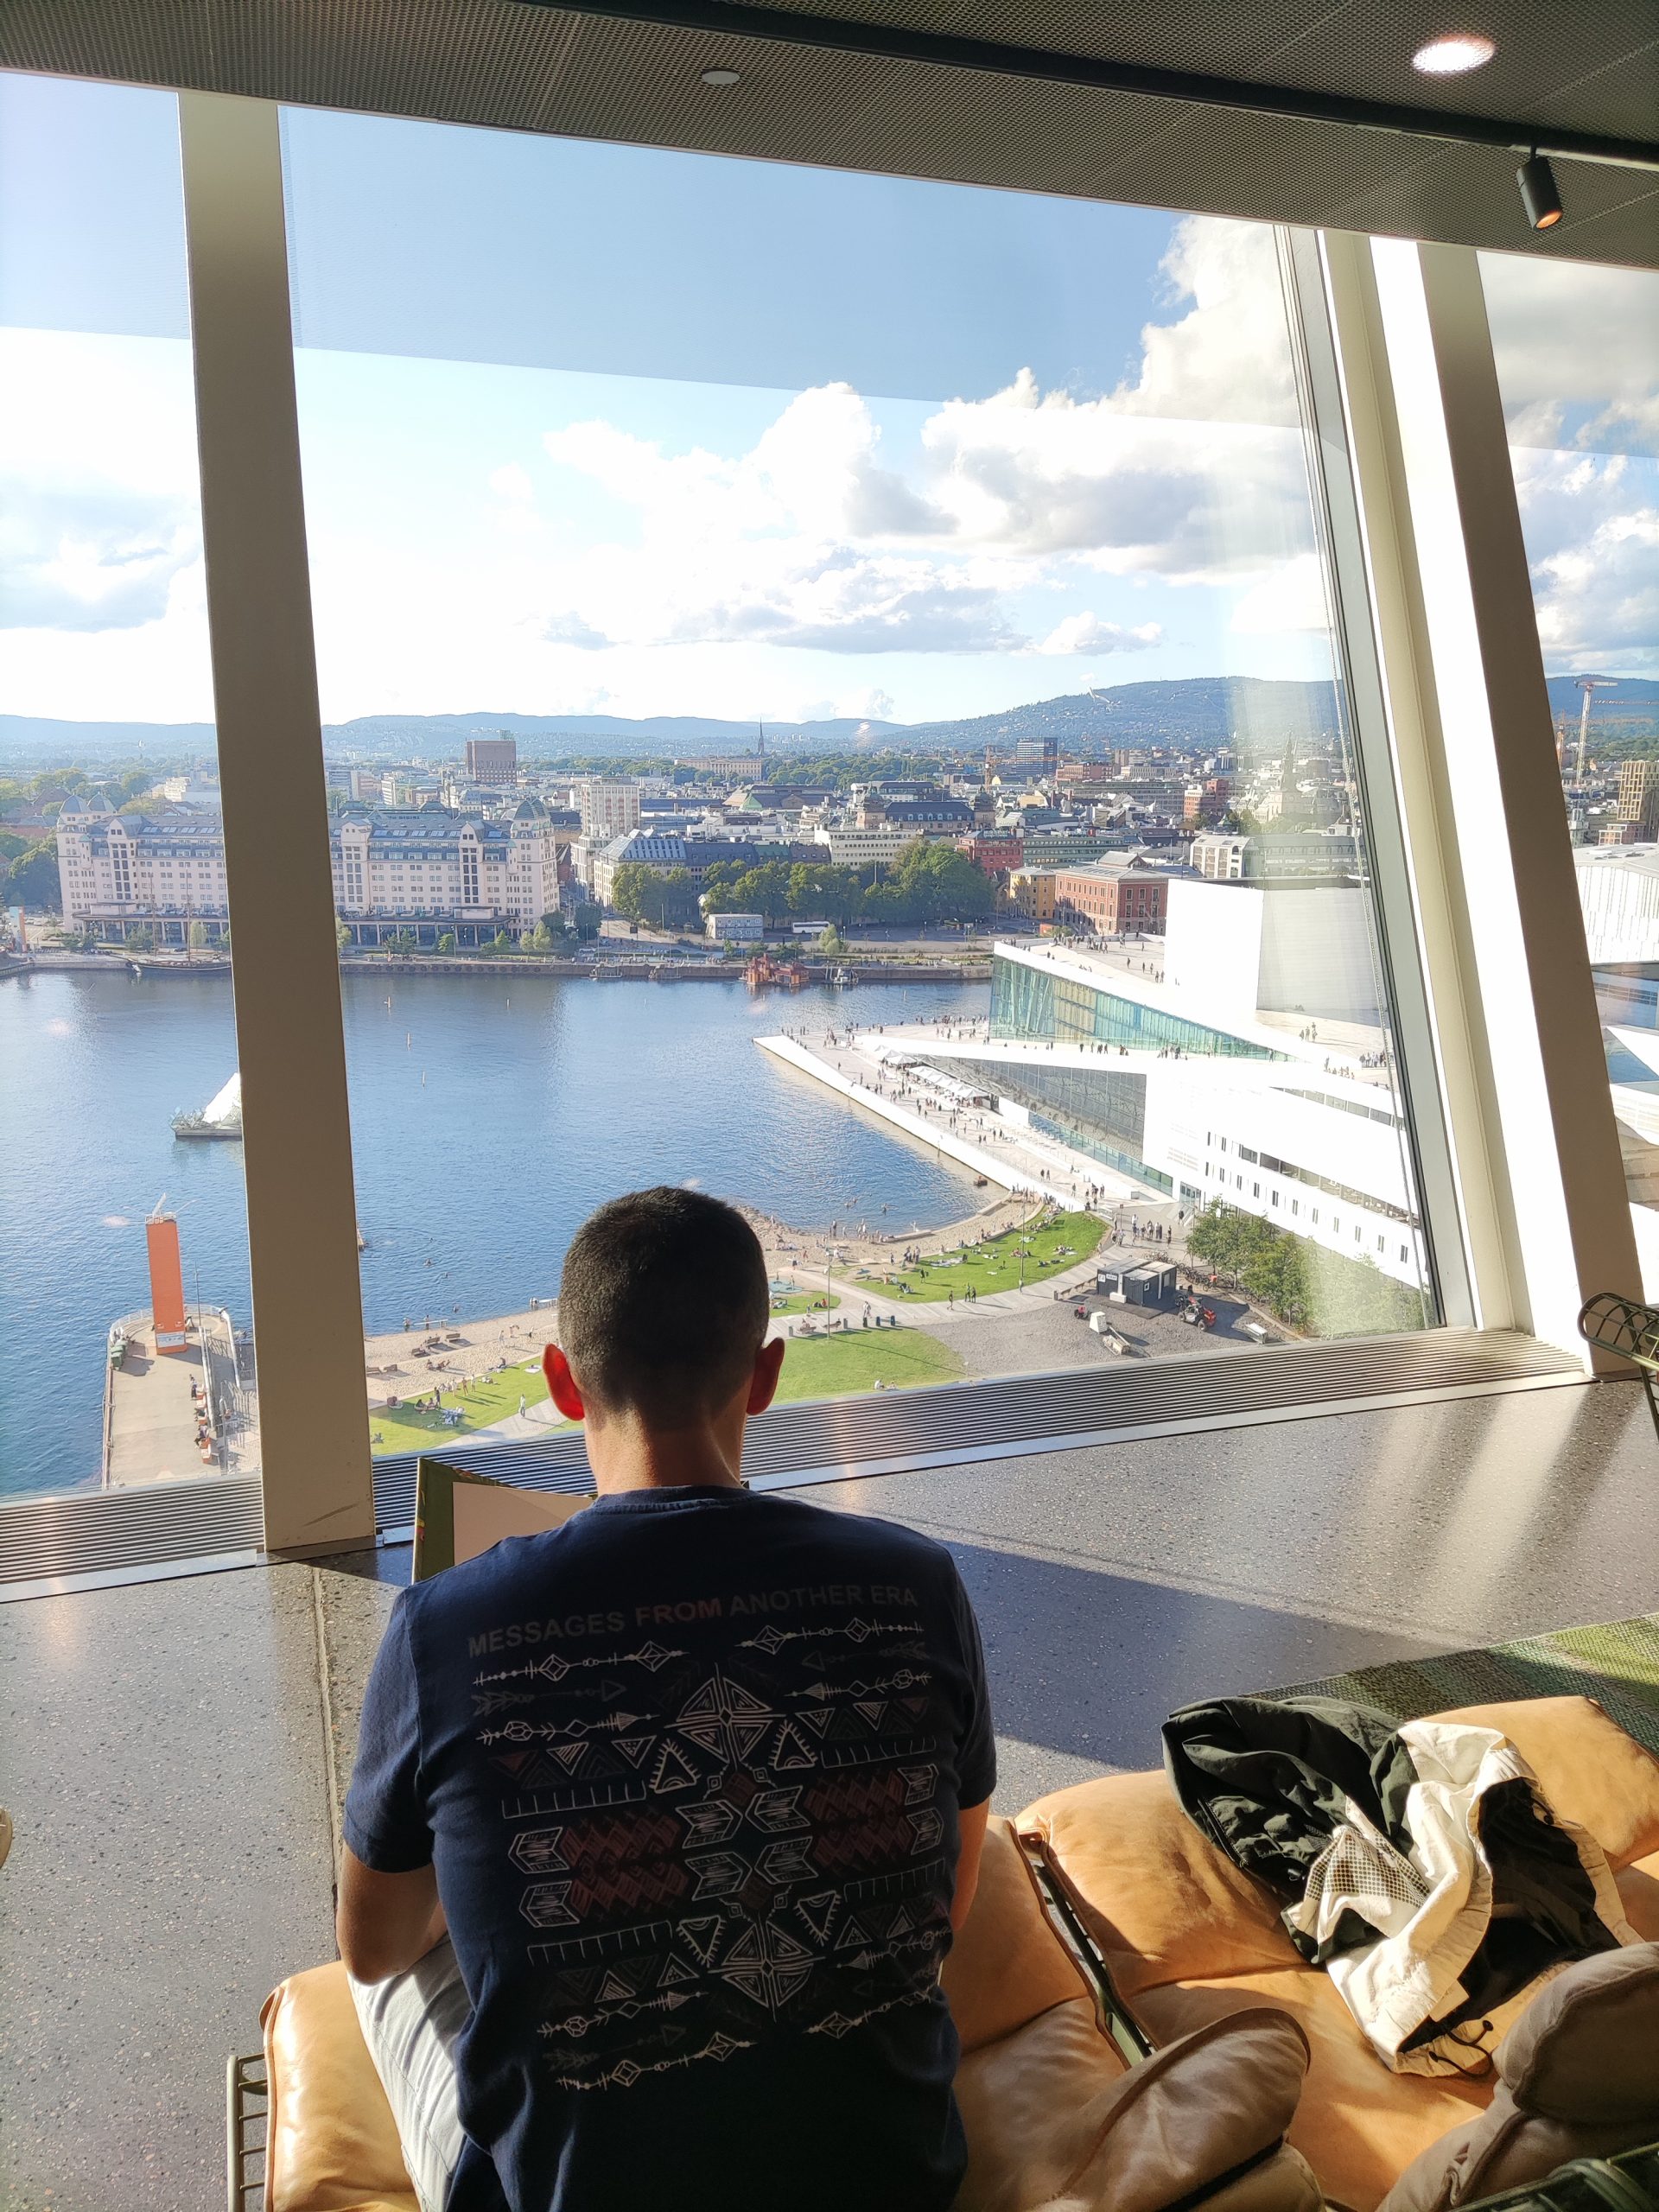 Skybar Oslo (Museo Munch) - Qué ver en Oslo